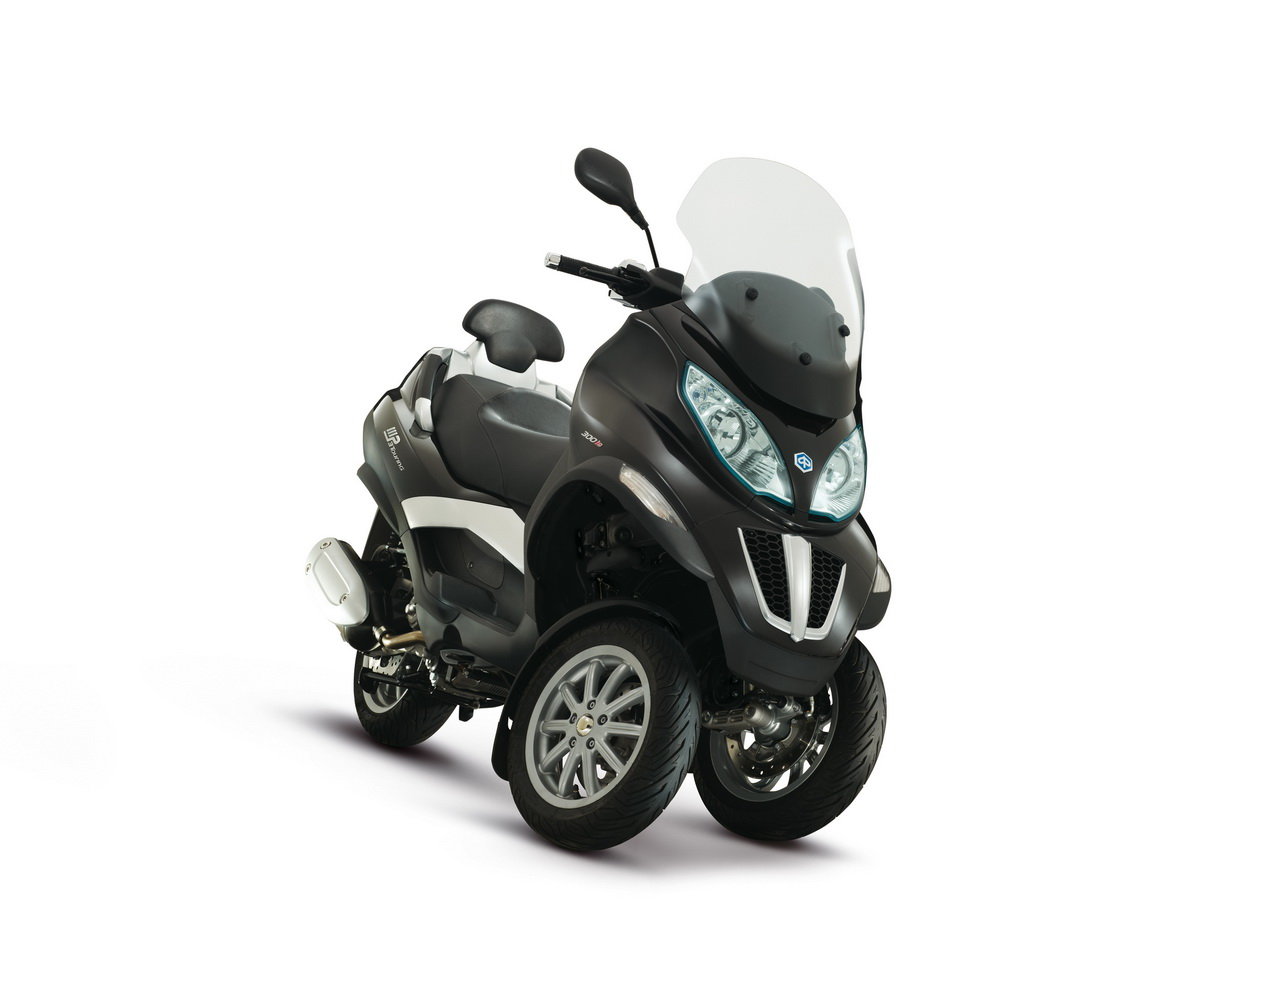 Listino Piaggio MP3 400 ie Touring Scooter oltre 300 - image 15114_piaggio-mp3400-ie-touring on https://moto.motori.net